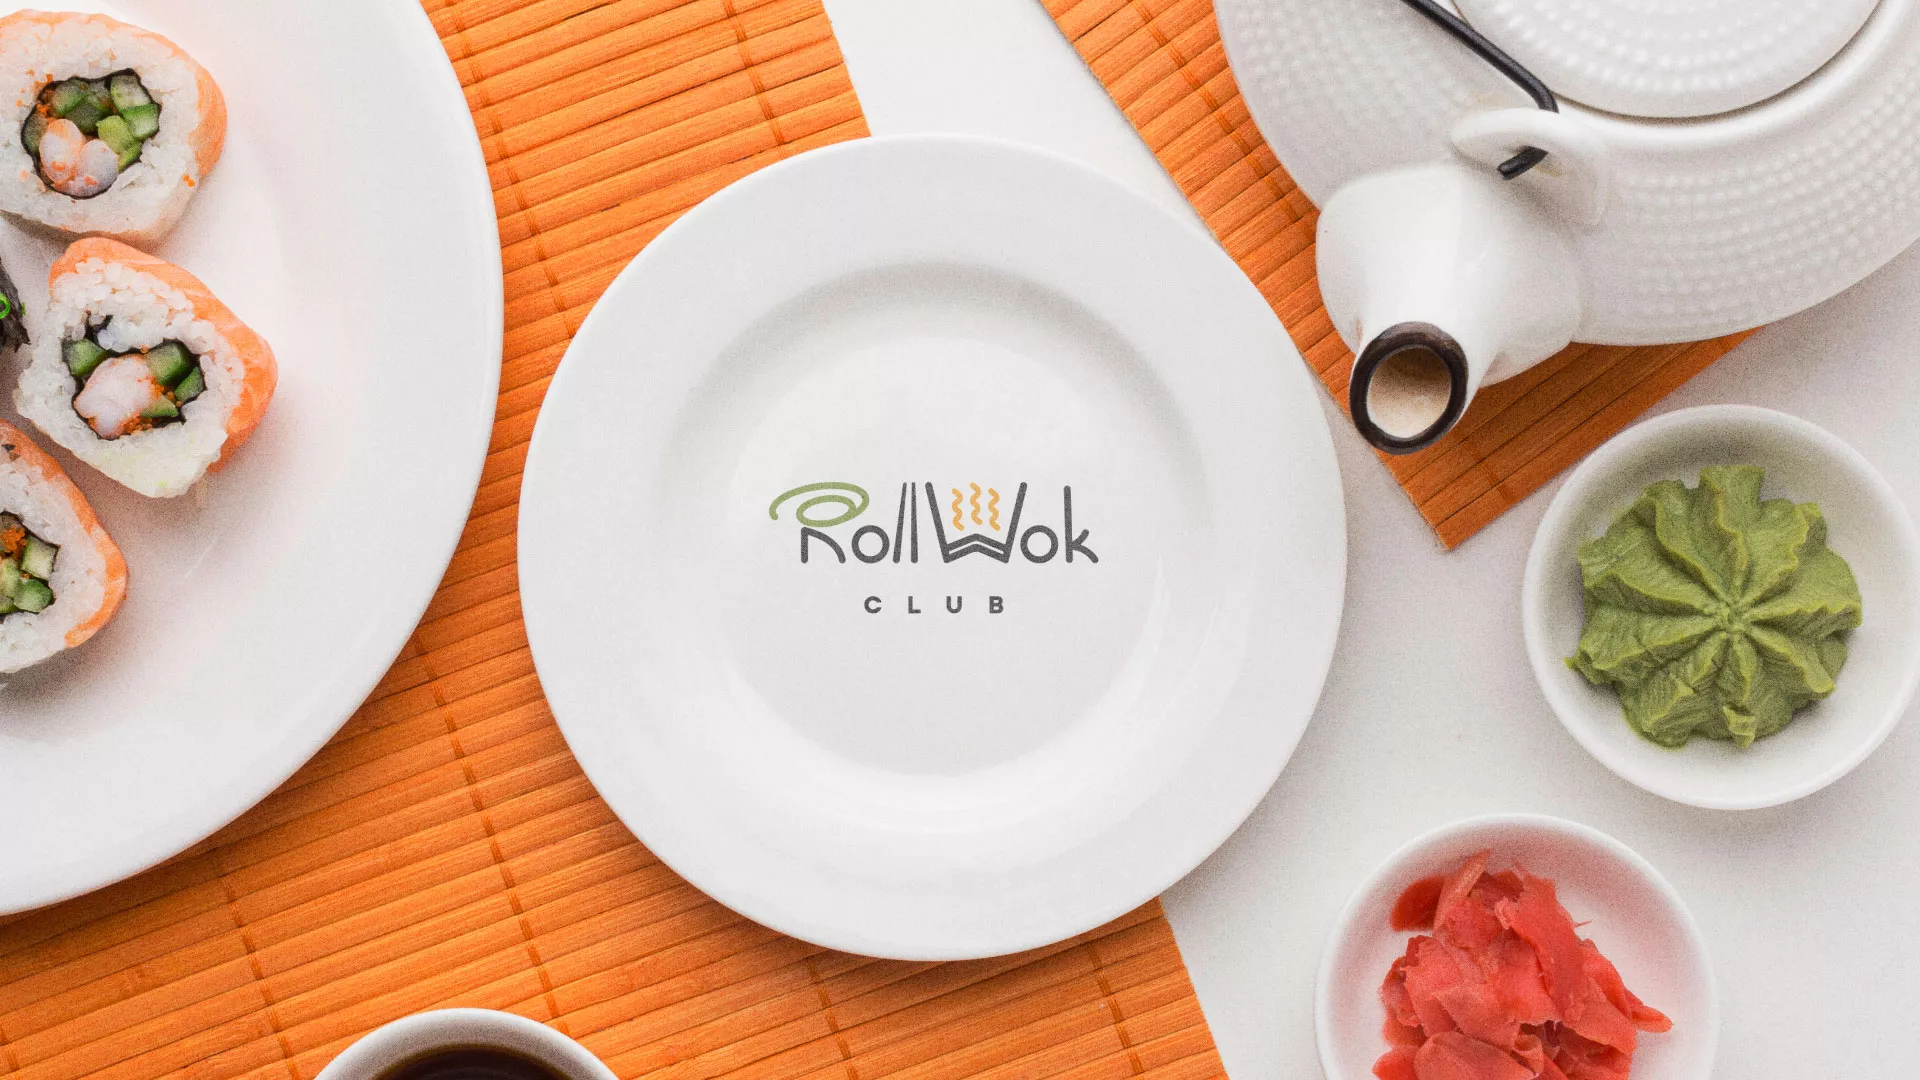 Разработка логотипа и фирменного стиля суши-бара «Roll Wok Club» в Анапе